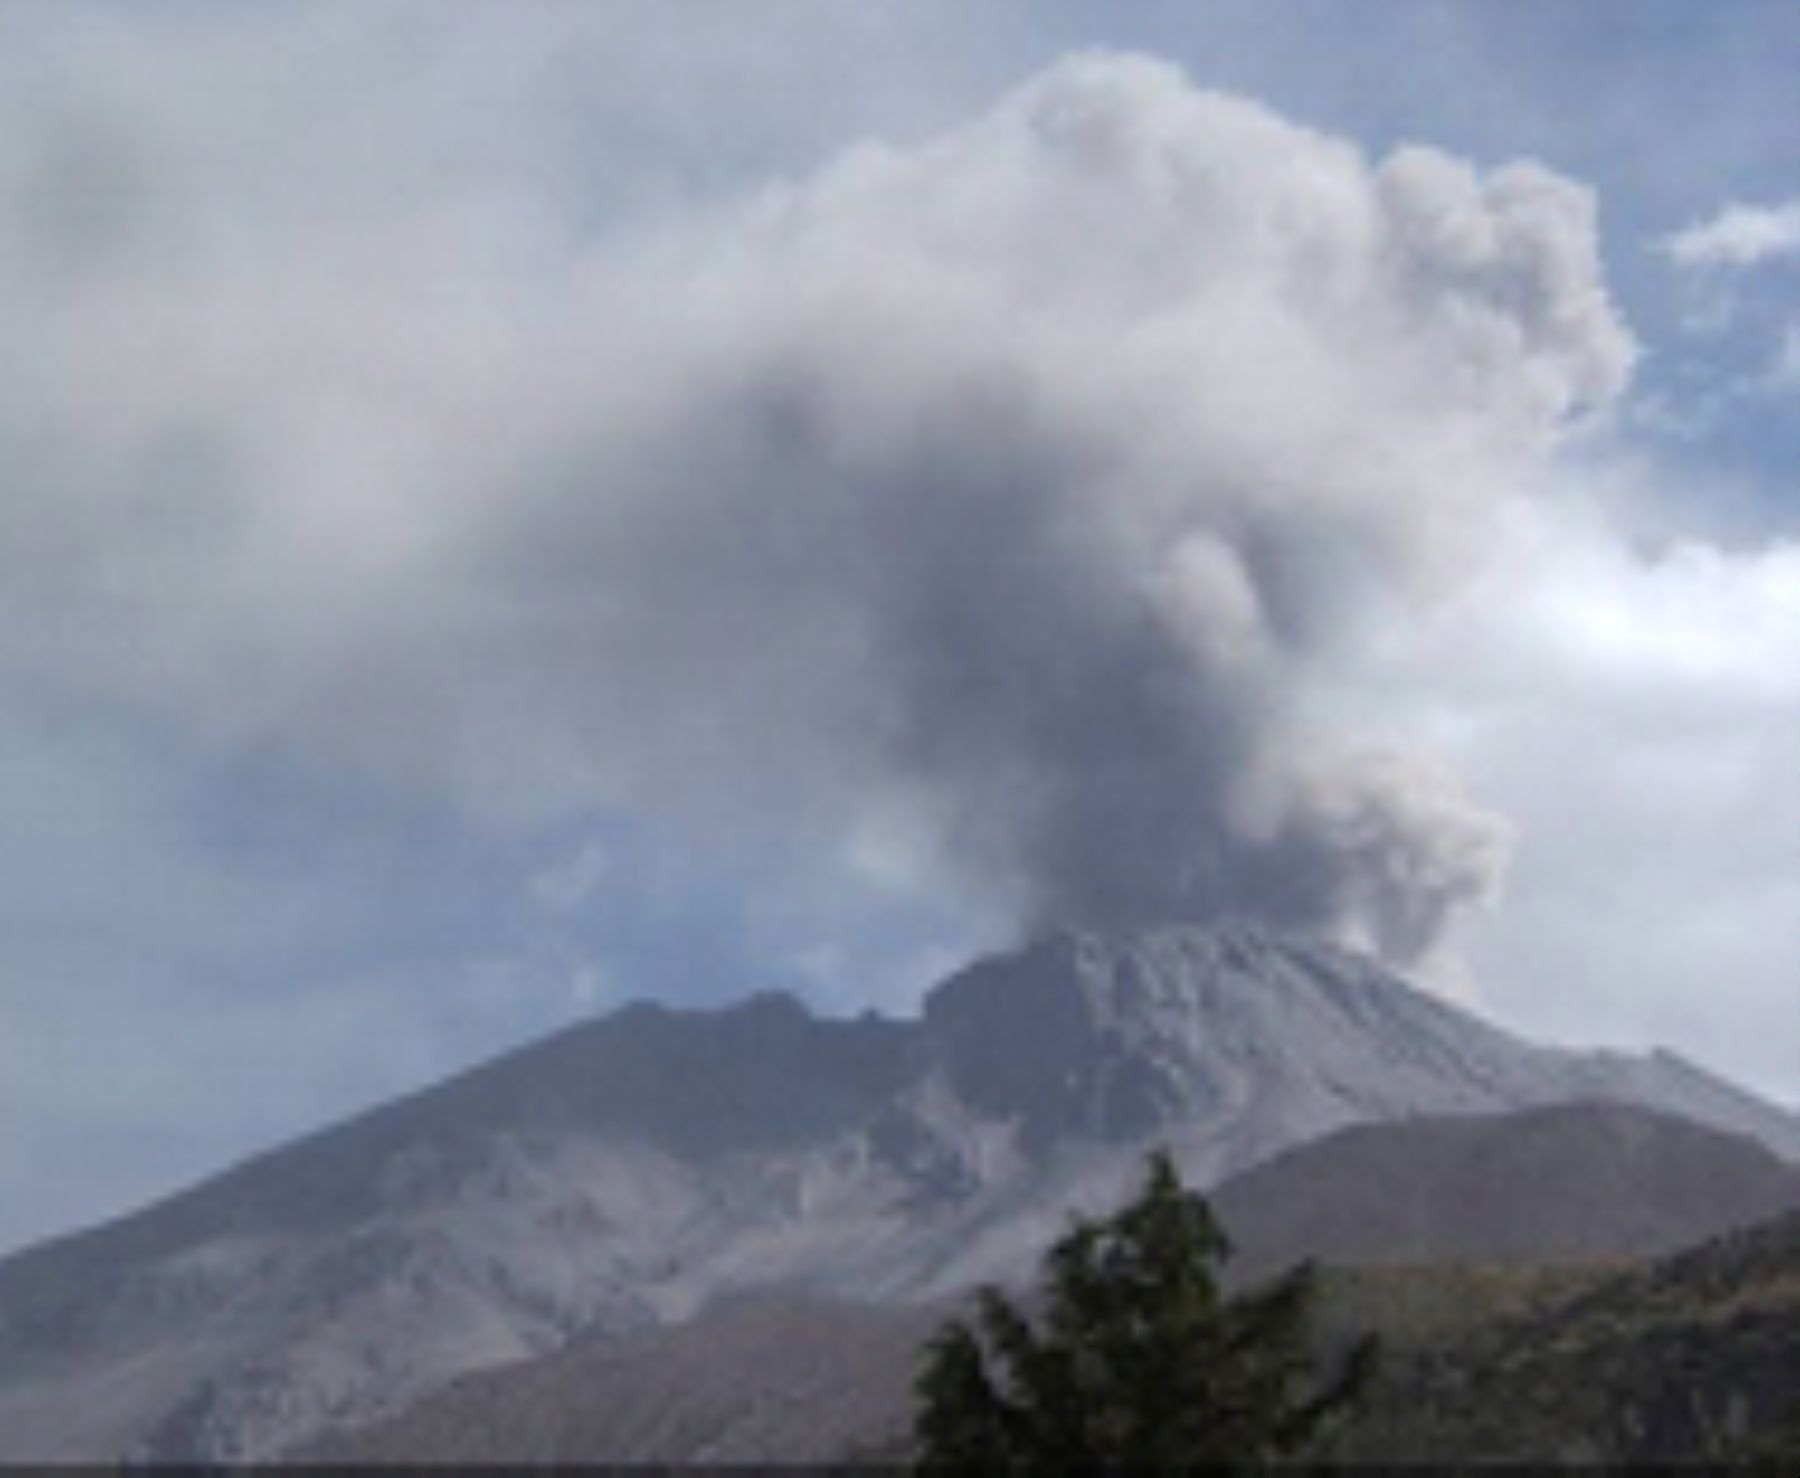 El Poder Ejecutivo declaró en estado de emergencia 12 distritos de las provincias de Chucuito, El Collao, Puno y San Roman del departamento de Puno por un plazo de 60 días calendario, debido al impacto de daño producido por el proceso eruptivo del volcán Ubinas, ubicado en Moquegua.ANDINA/Difusión